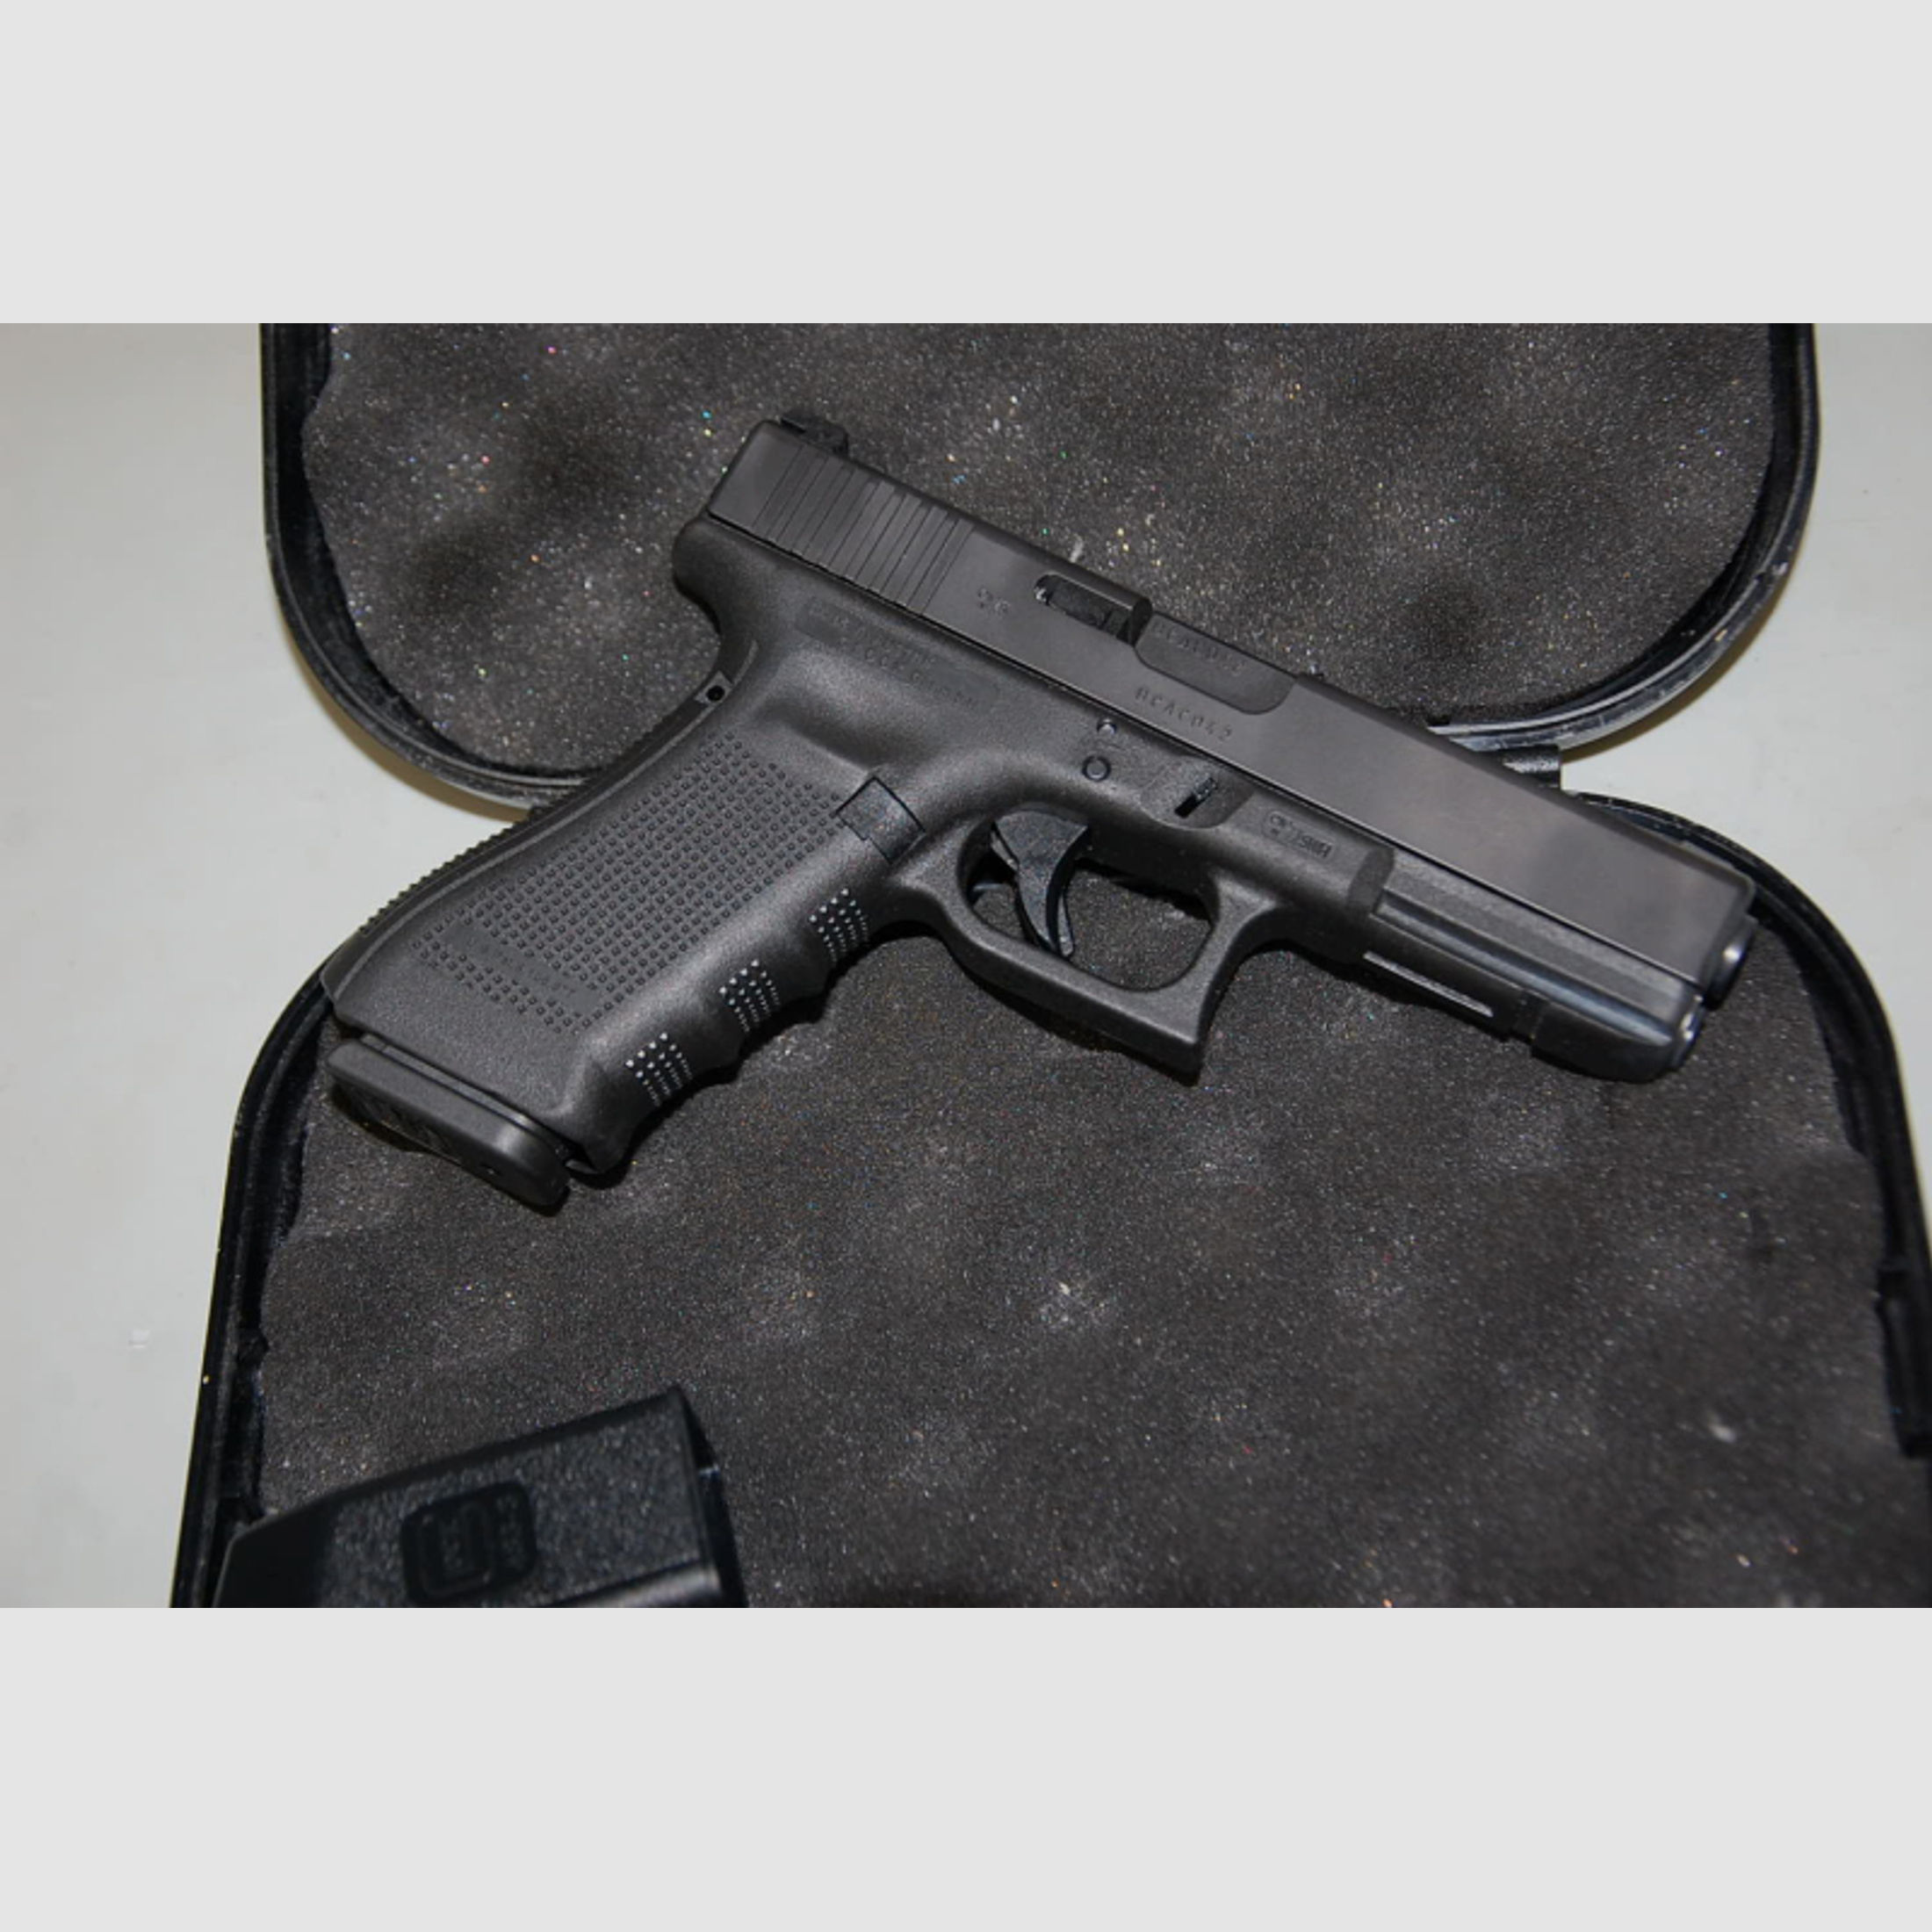 Pistole Glock 17 Gen 4 kal 9mm Luger im Bestzustand